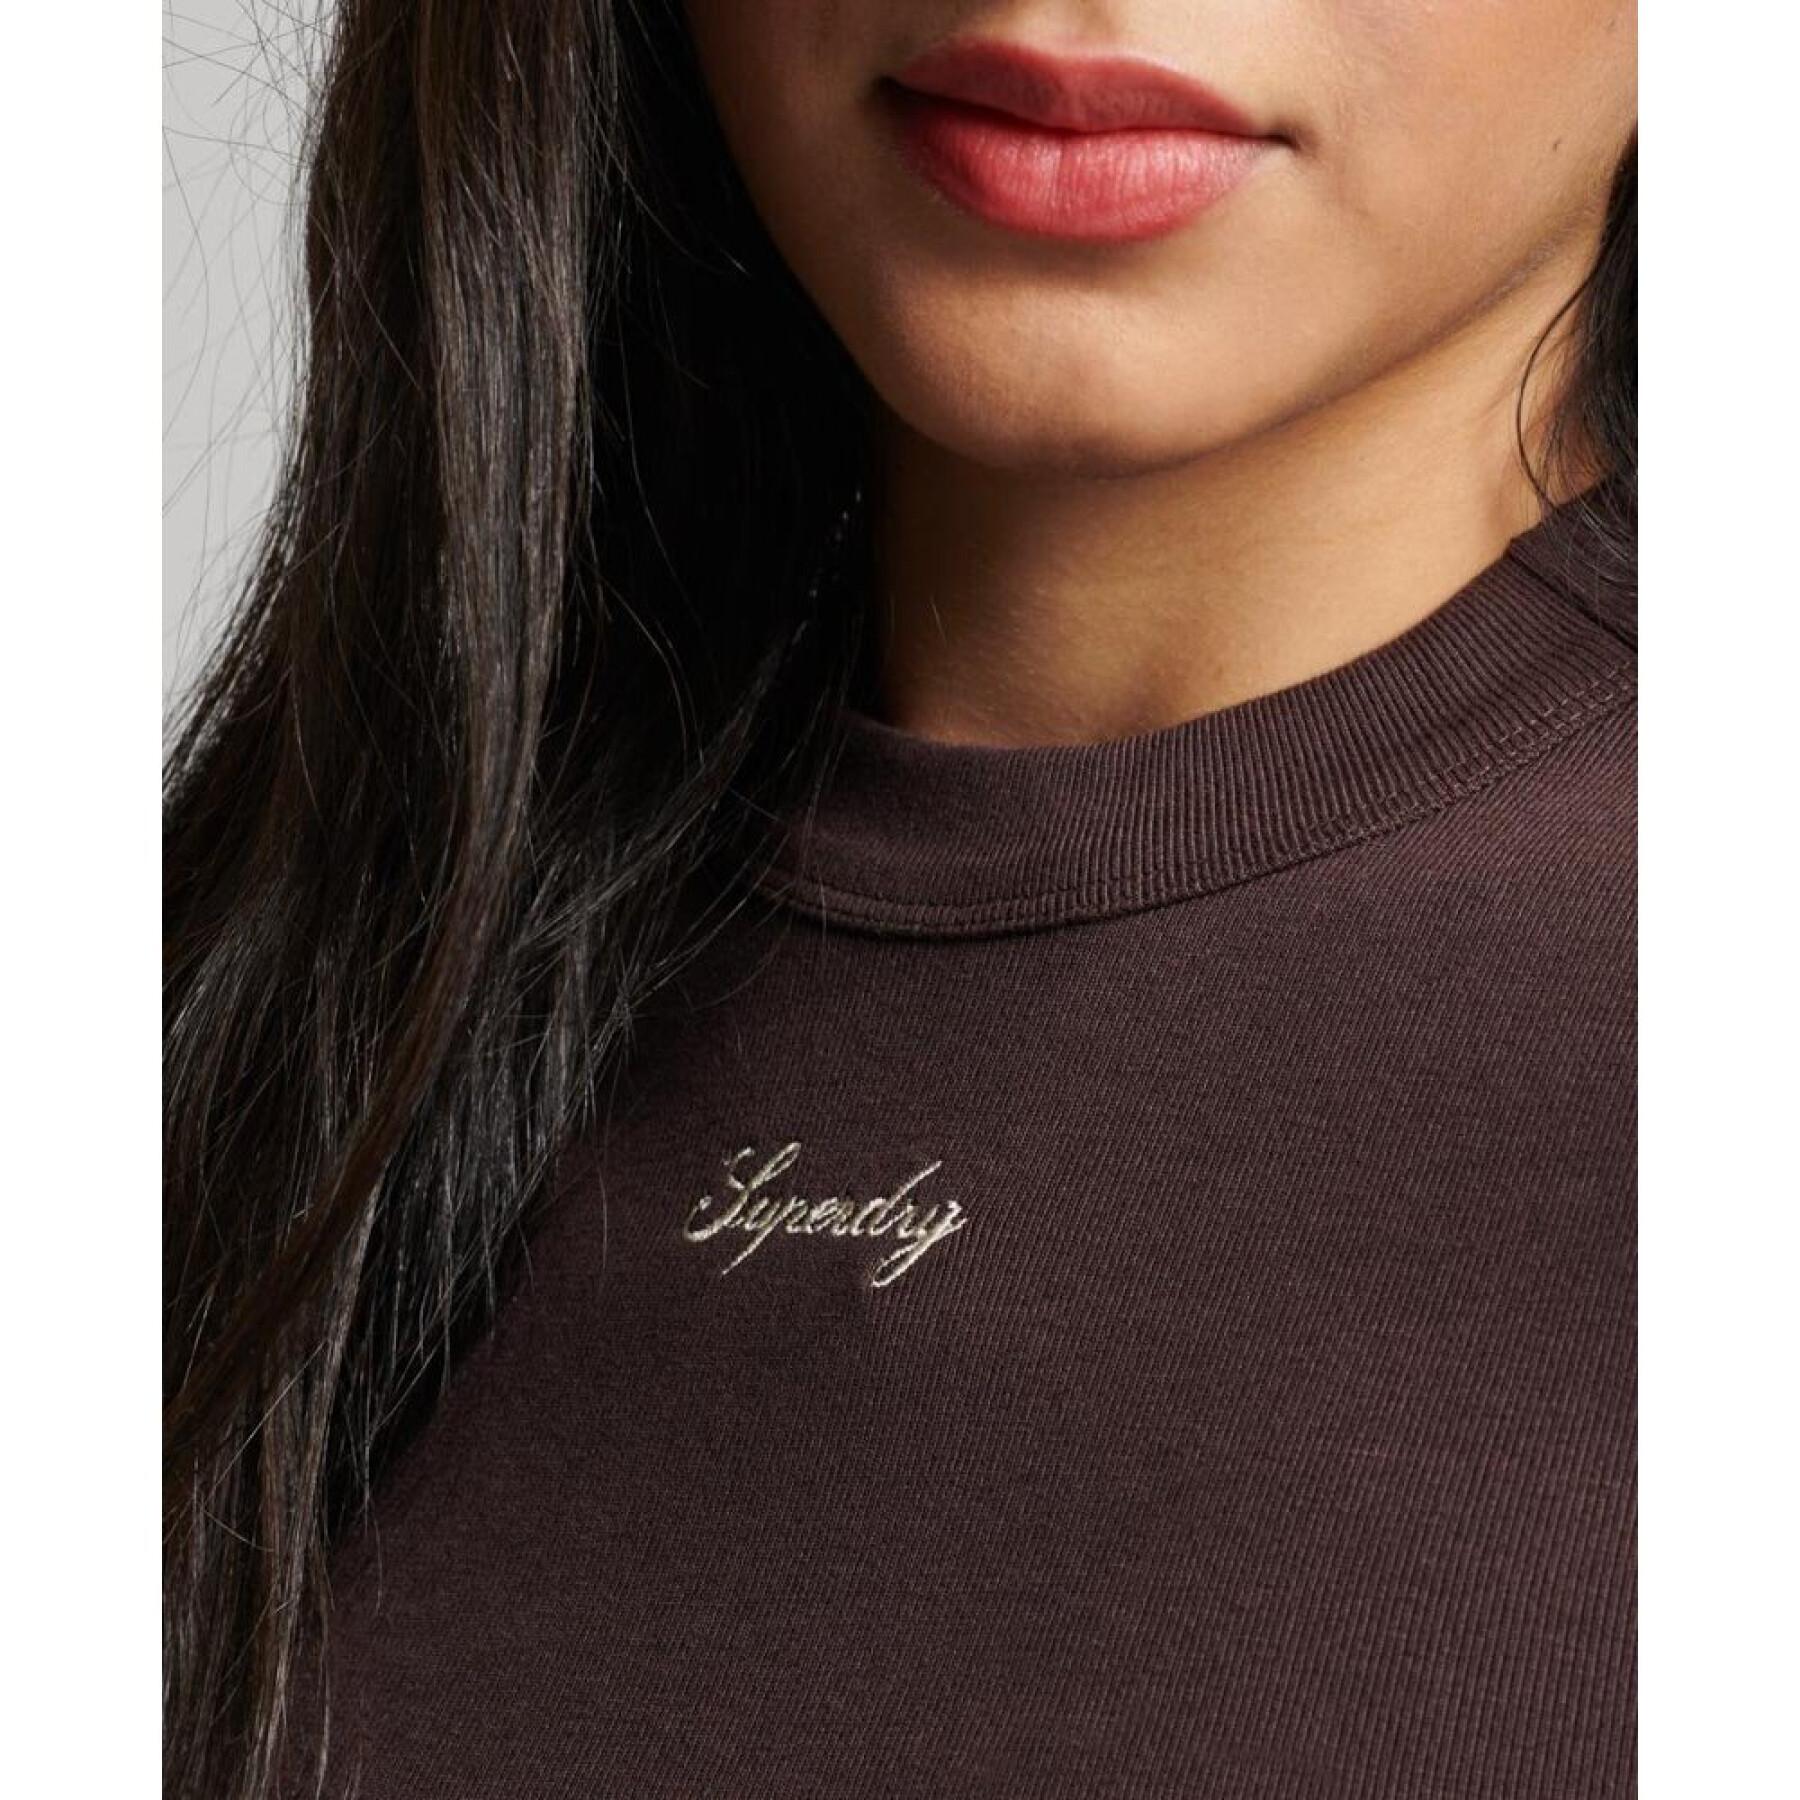 T-shirt ajusté côtelé brodé à manches longues femme Superdry